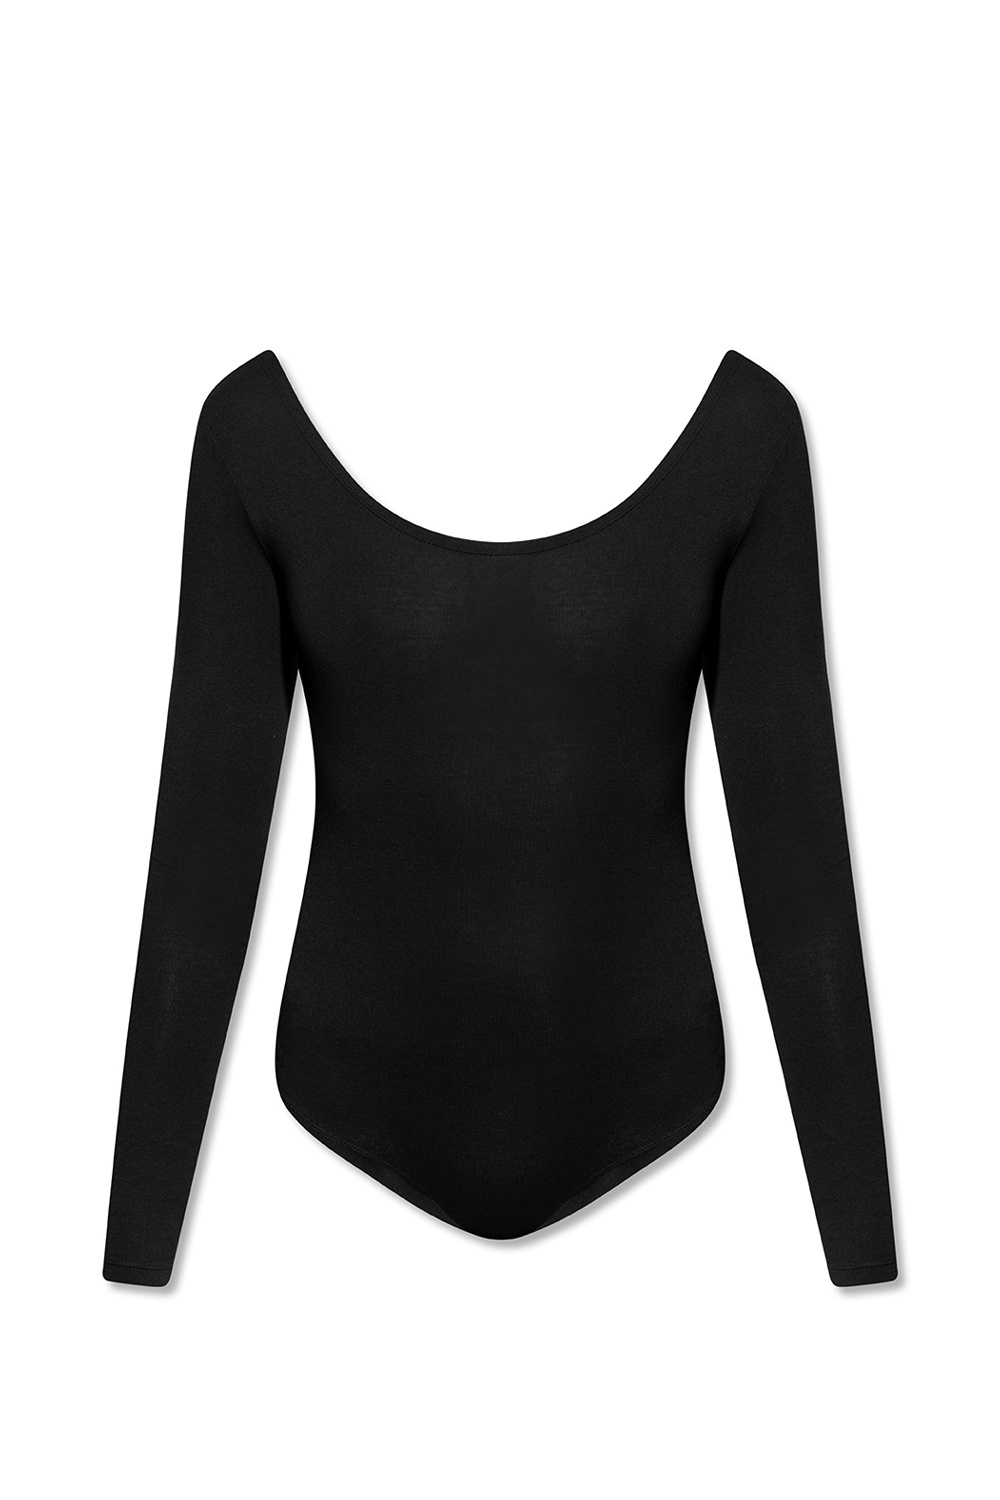 VERSACE Print Bodysuit in Black & Stampa, FWRD